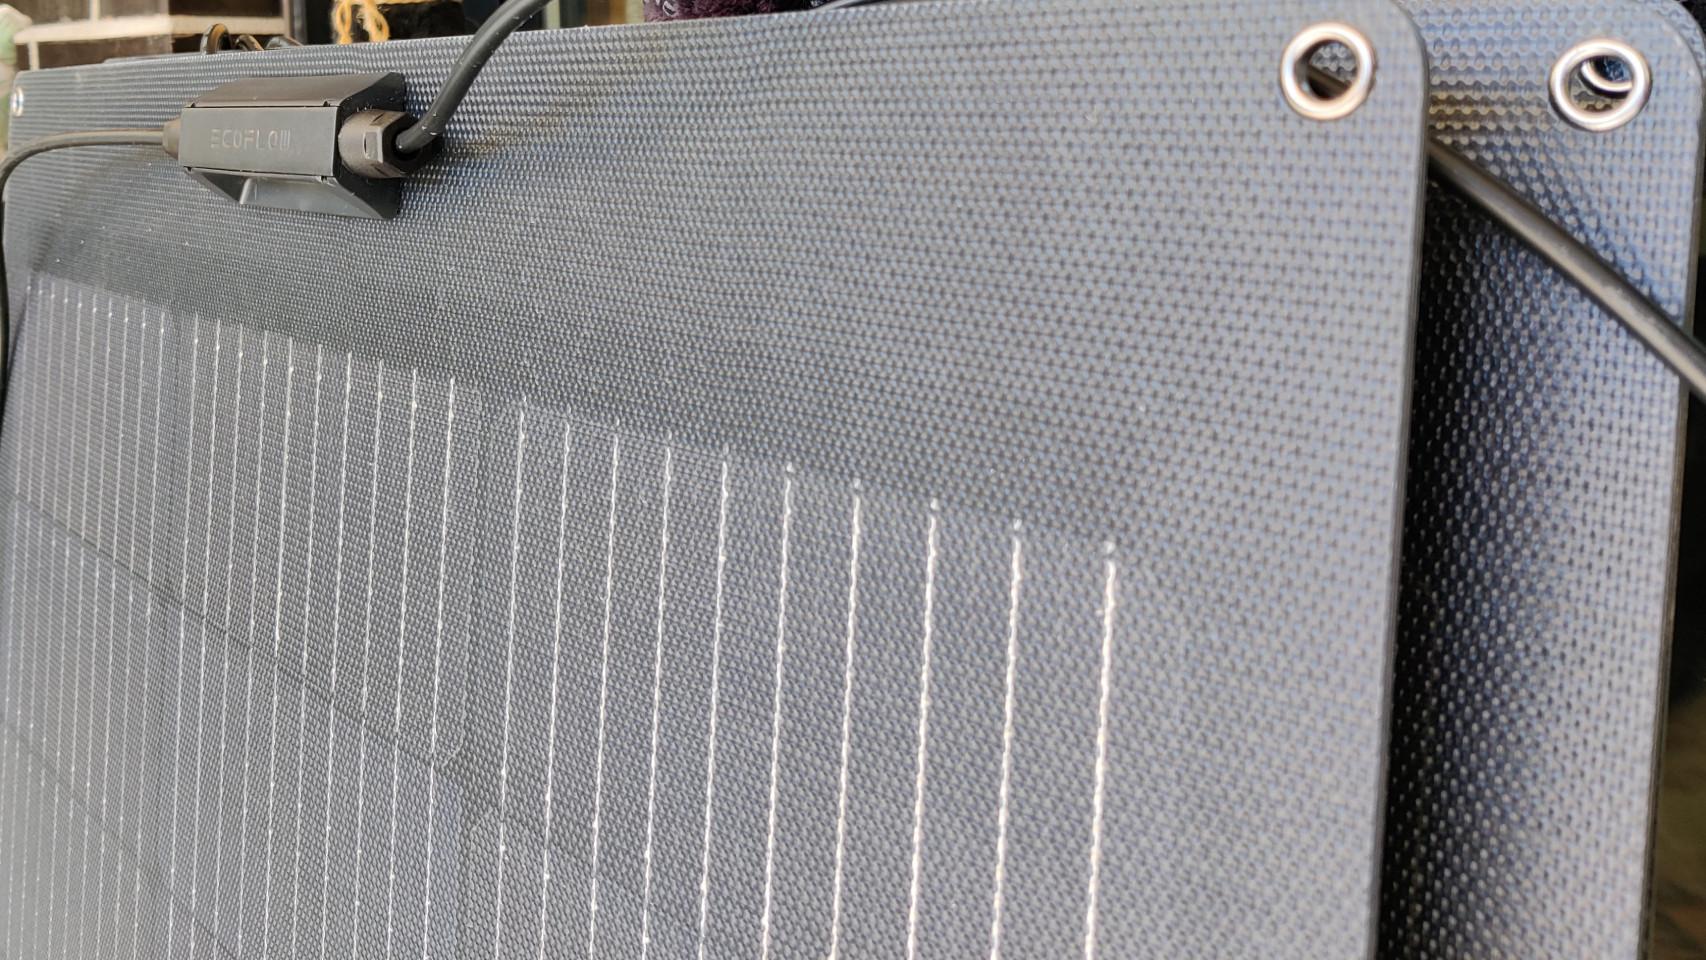 Los paneles solares flexibles cuentan con arandelas para instalarlos fácilmente